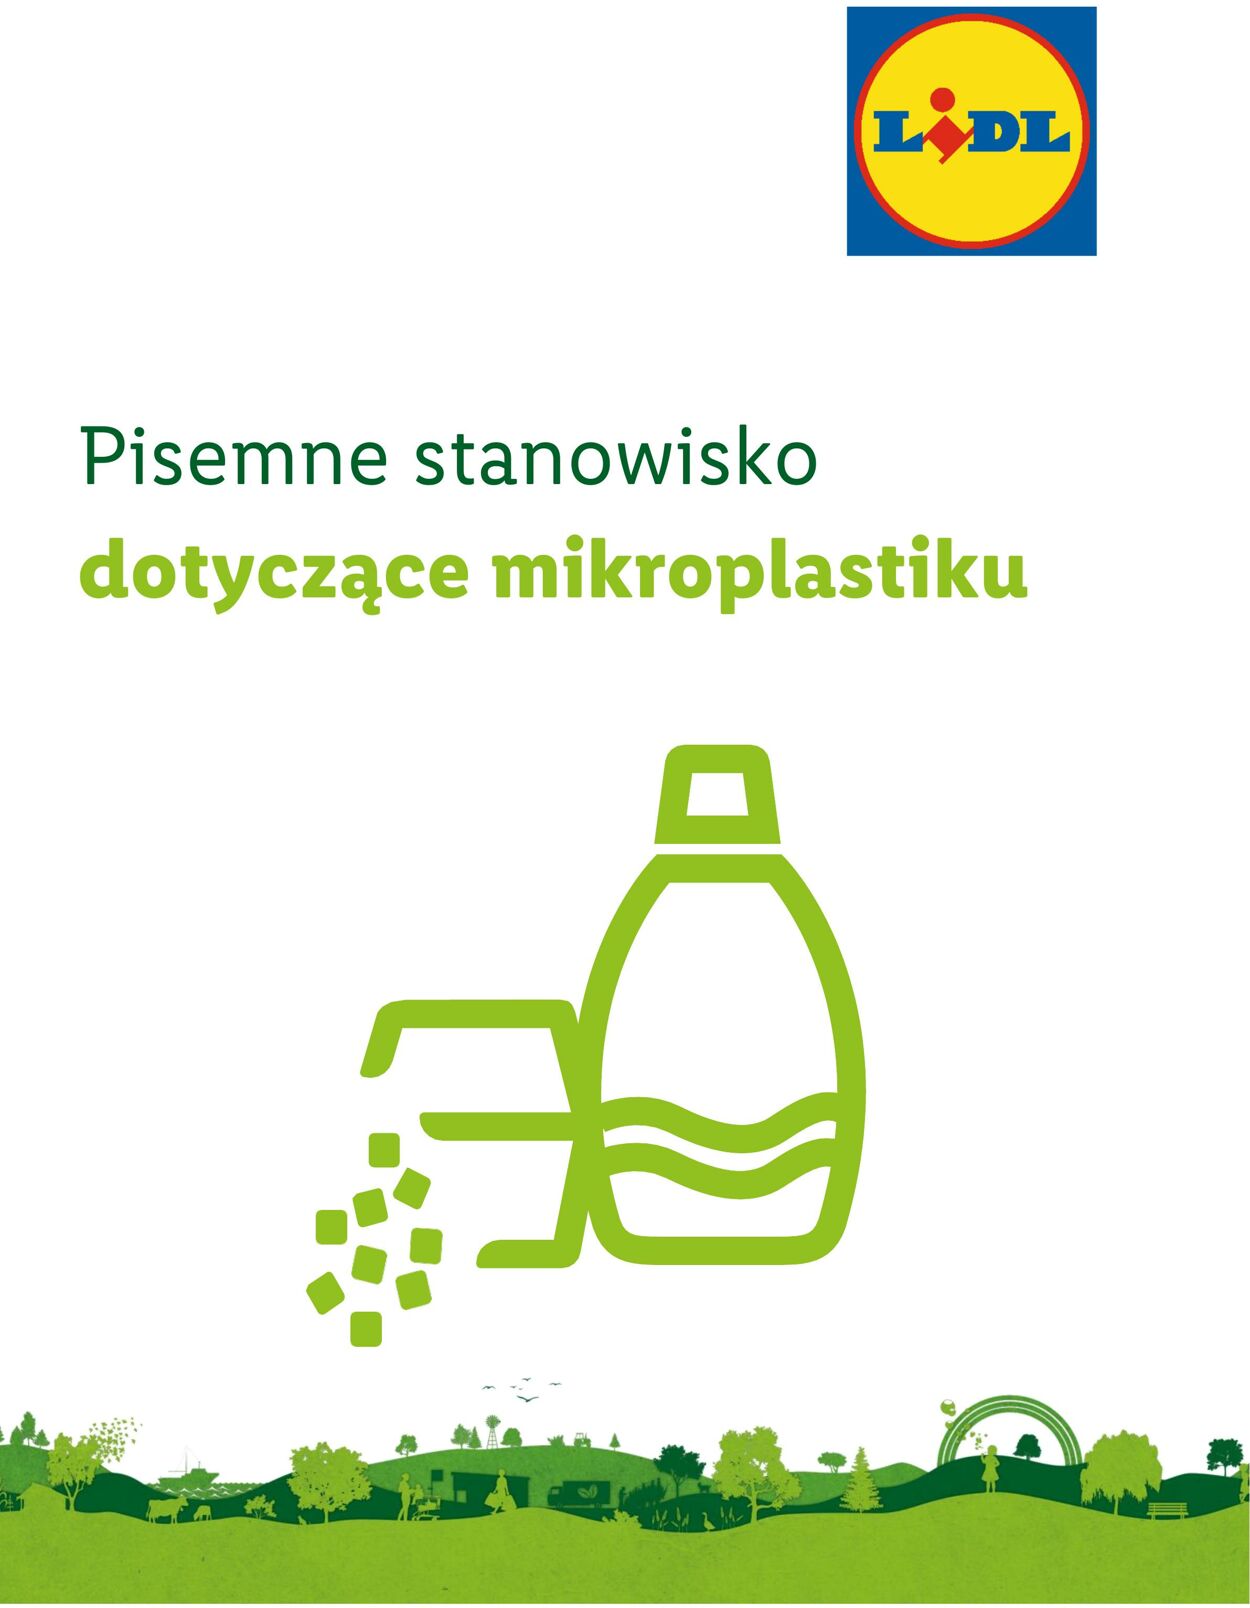 Gazetka Lidl - Polityka dotycząca mikroplastiku 15 wrz, 2020 - 15 wrz, 2222